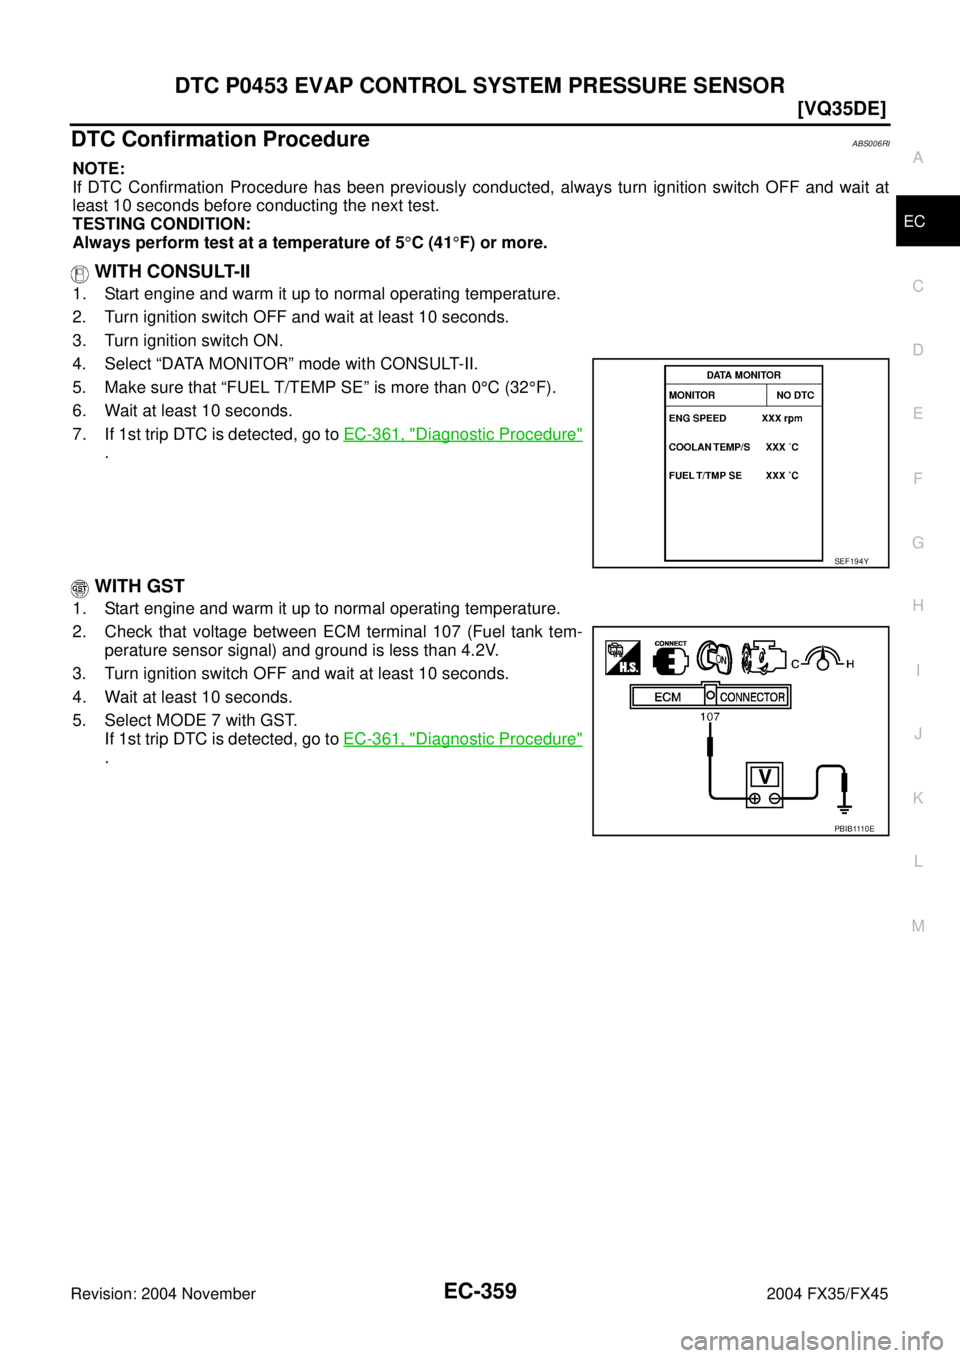 INFINITI FX35 2004  Service Manual DTC P0453 EVAP CONTROL SYSTEM PRESSURE SENSOR
EC-359
[VQ35DE]
C
D
E
F
G
H
I
J
K
L
MA
EC
Revision: 2004 November 2004 FX35/FX45
DTC Confirmation ProcedureABS006RI
NOTE:
If DTC Confirmation Procedure ha